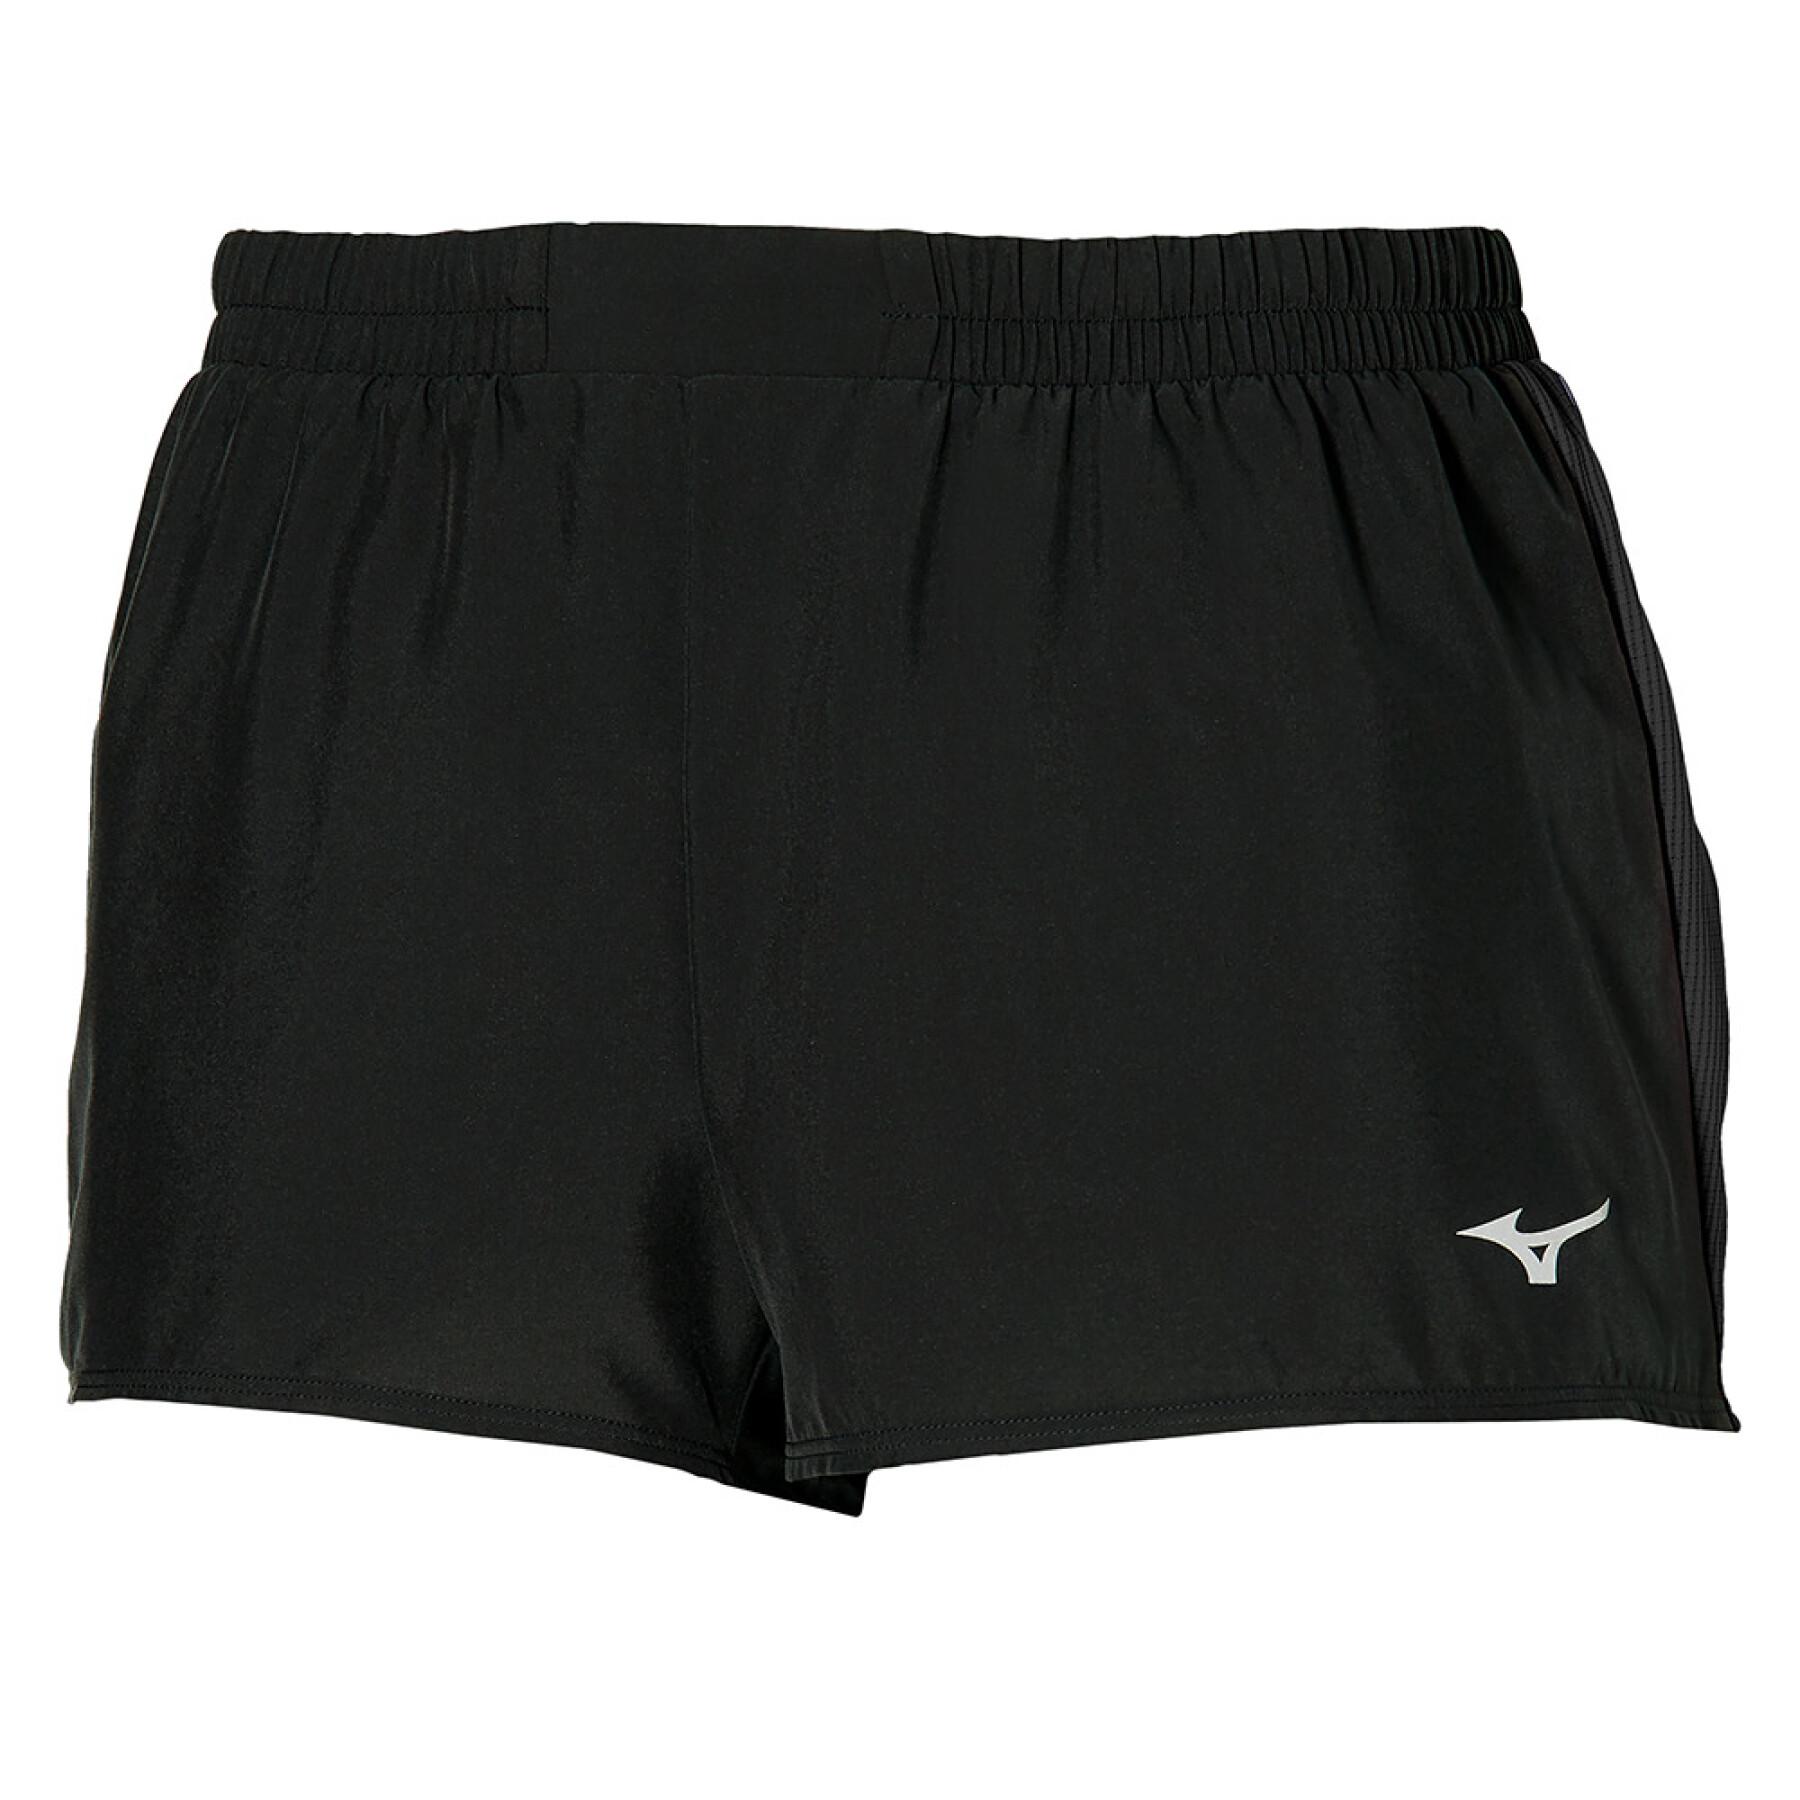 Dames shorts Mizuno Aero 2.5